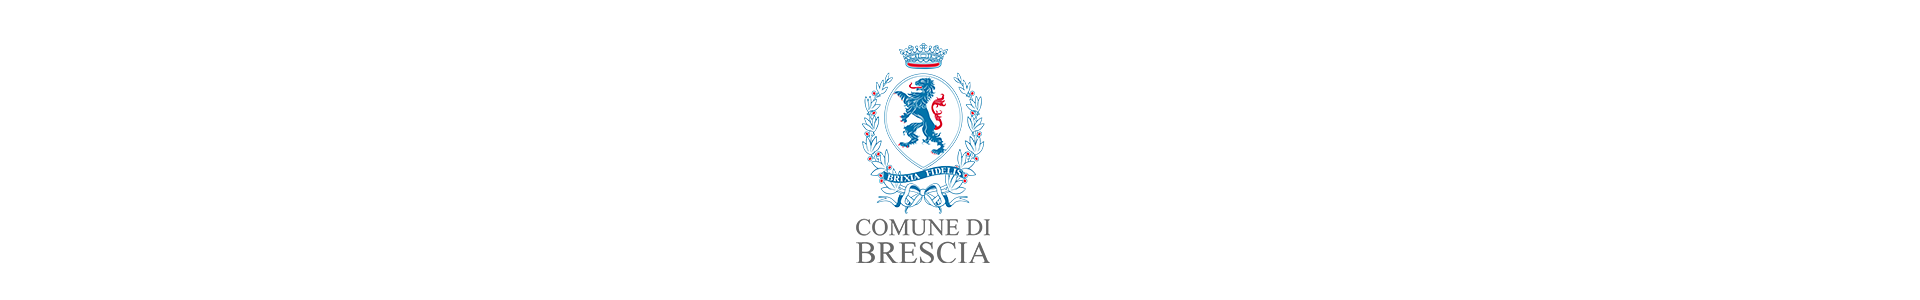 Comune di Brescia - 